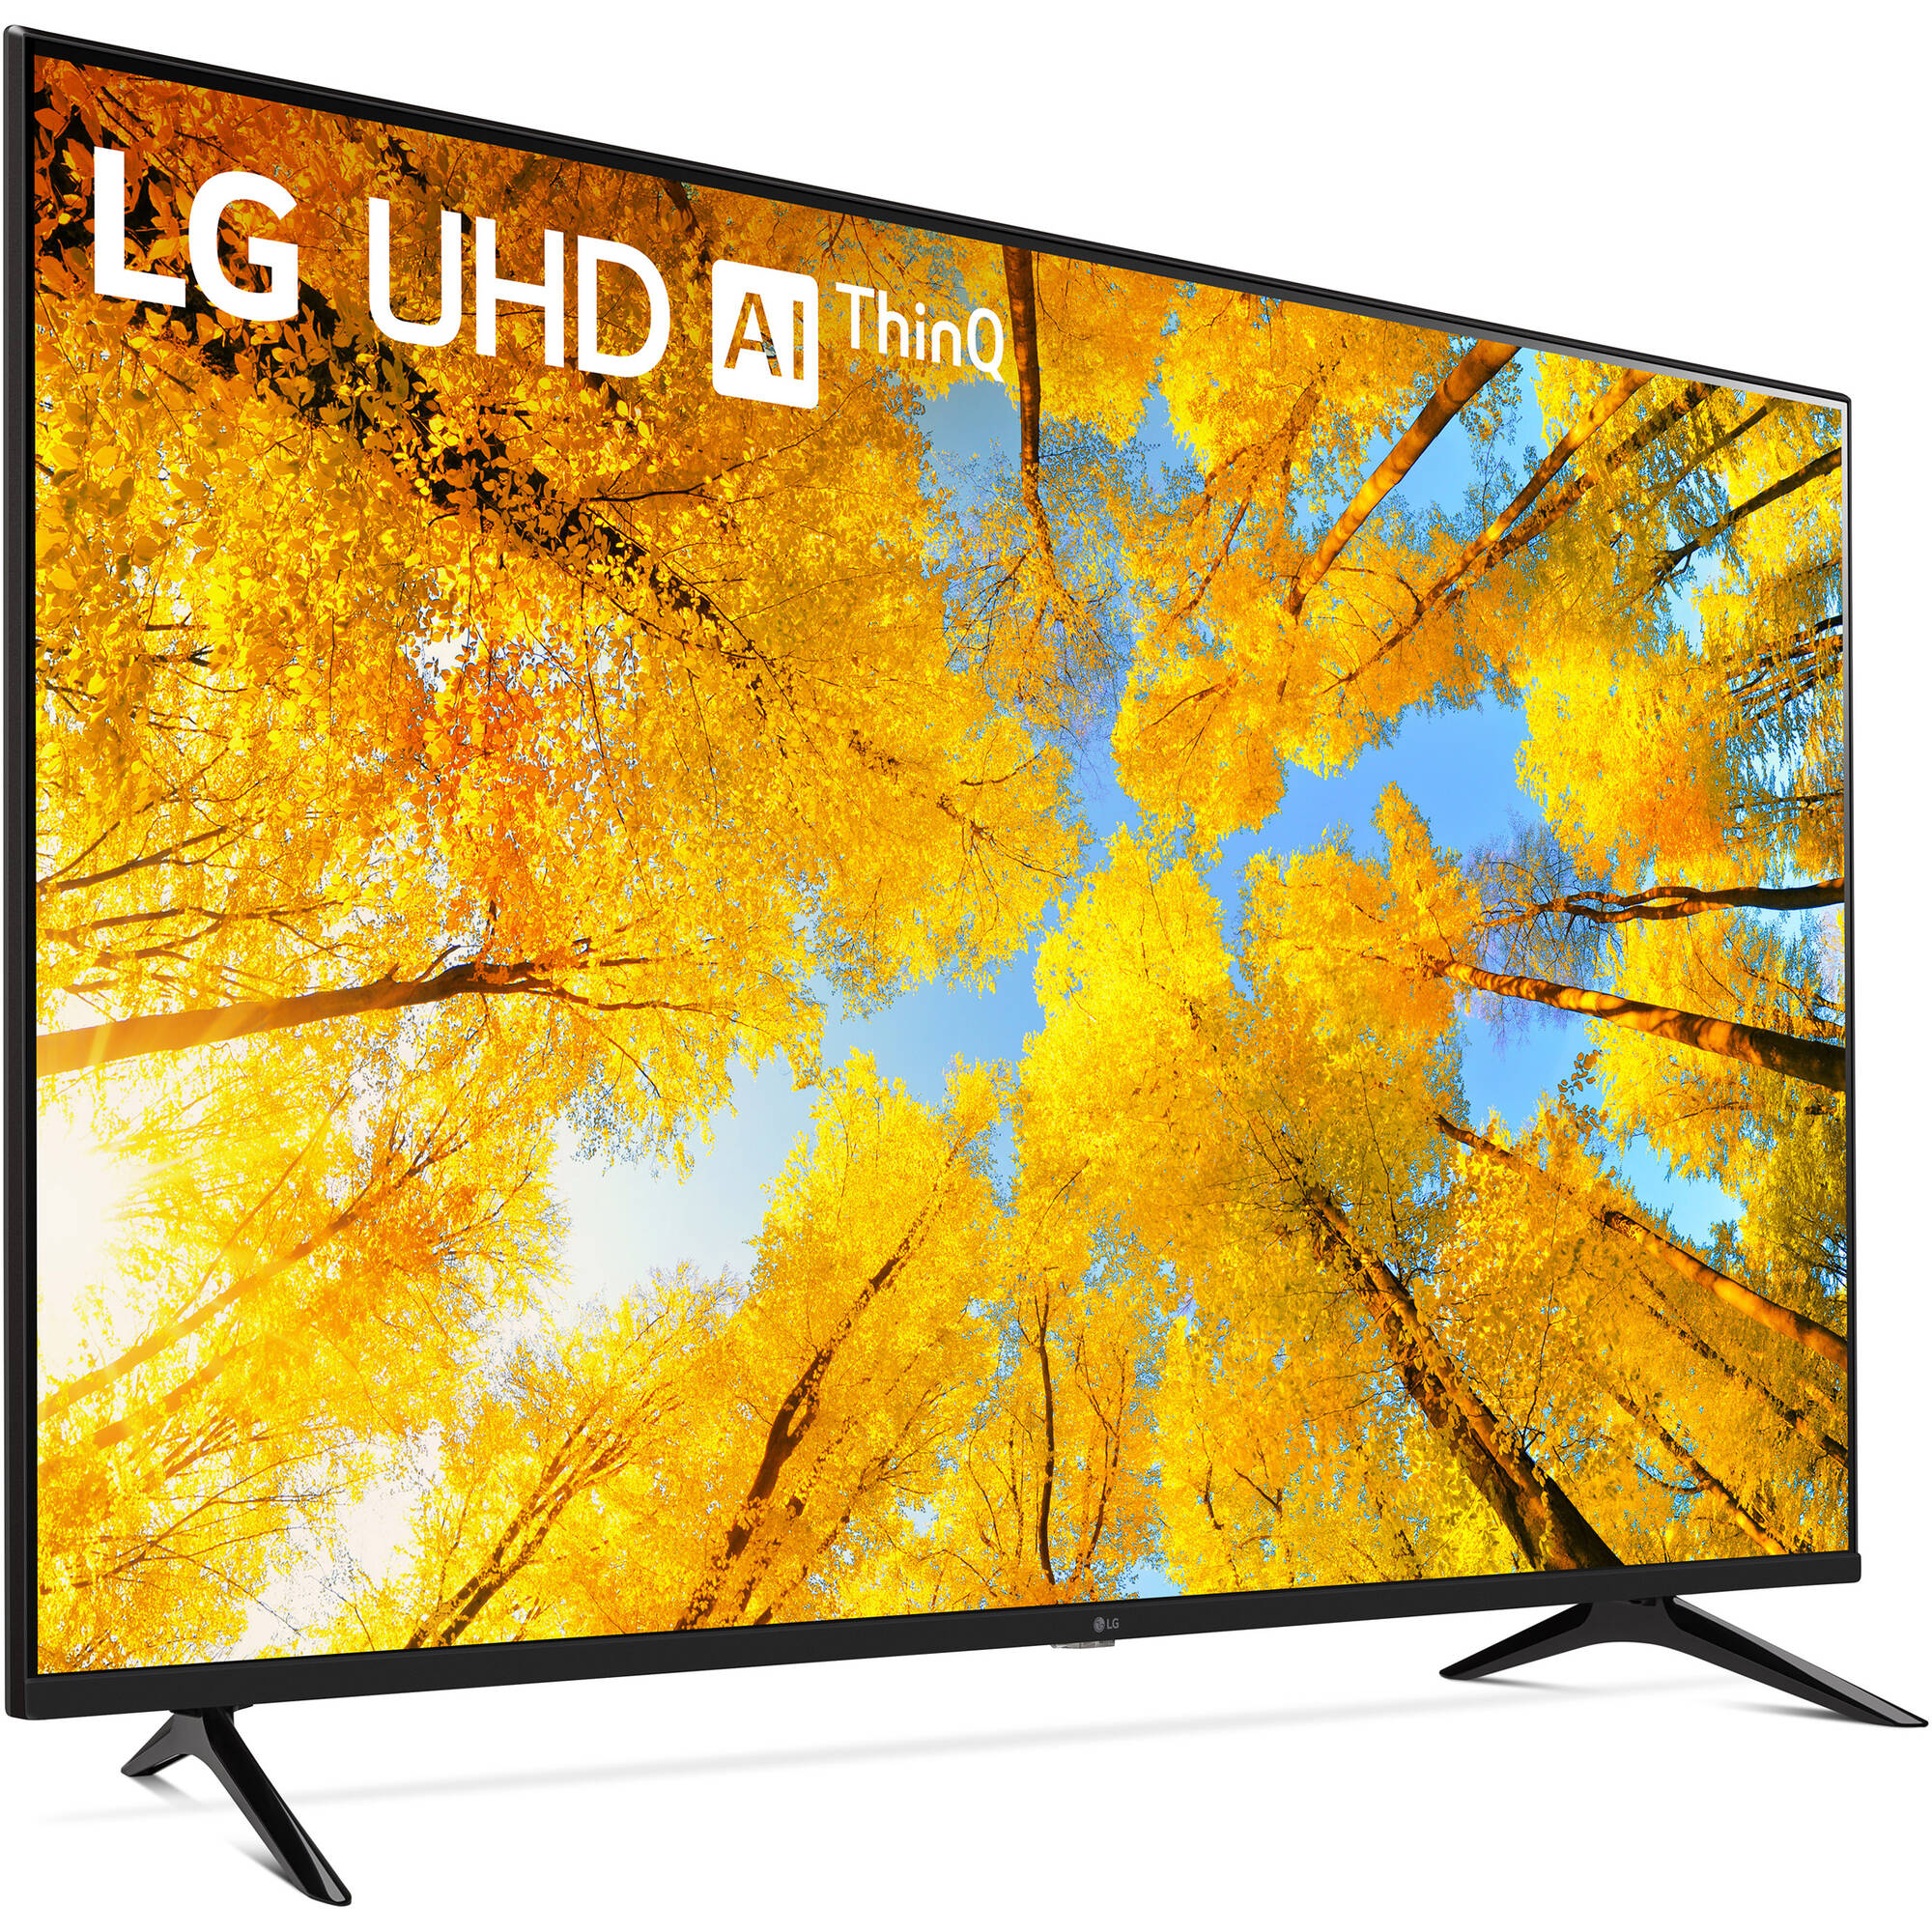 LG UQ7570PUJ 50 "4K HDR Smart LED TV